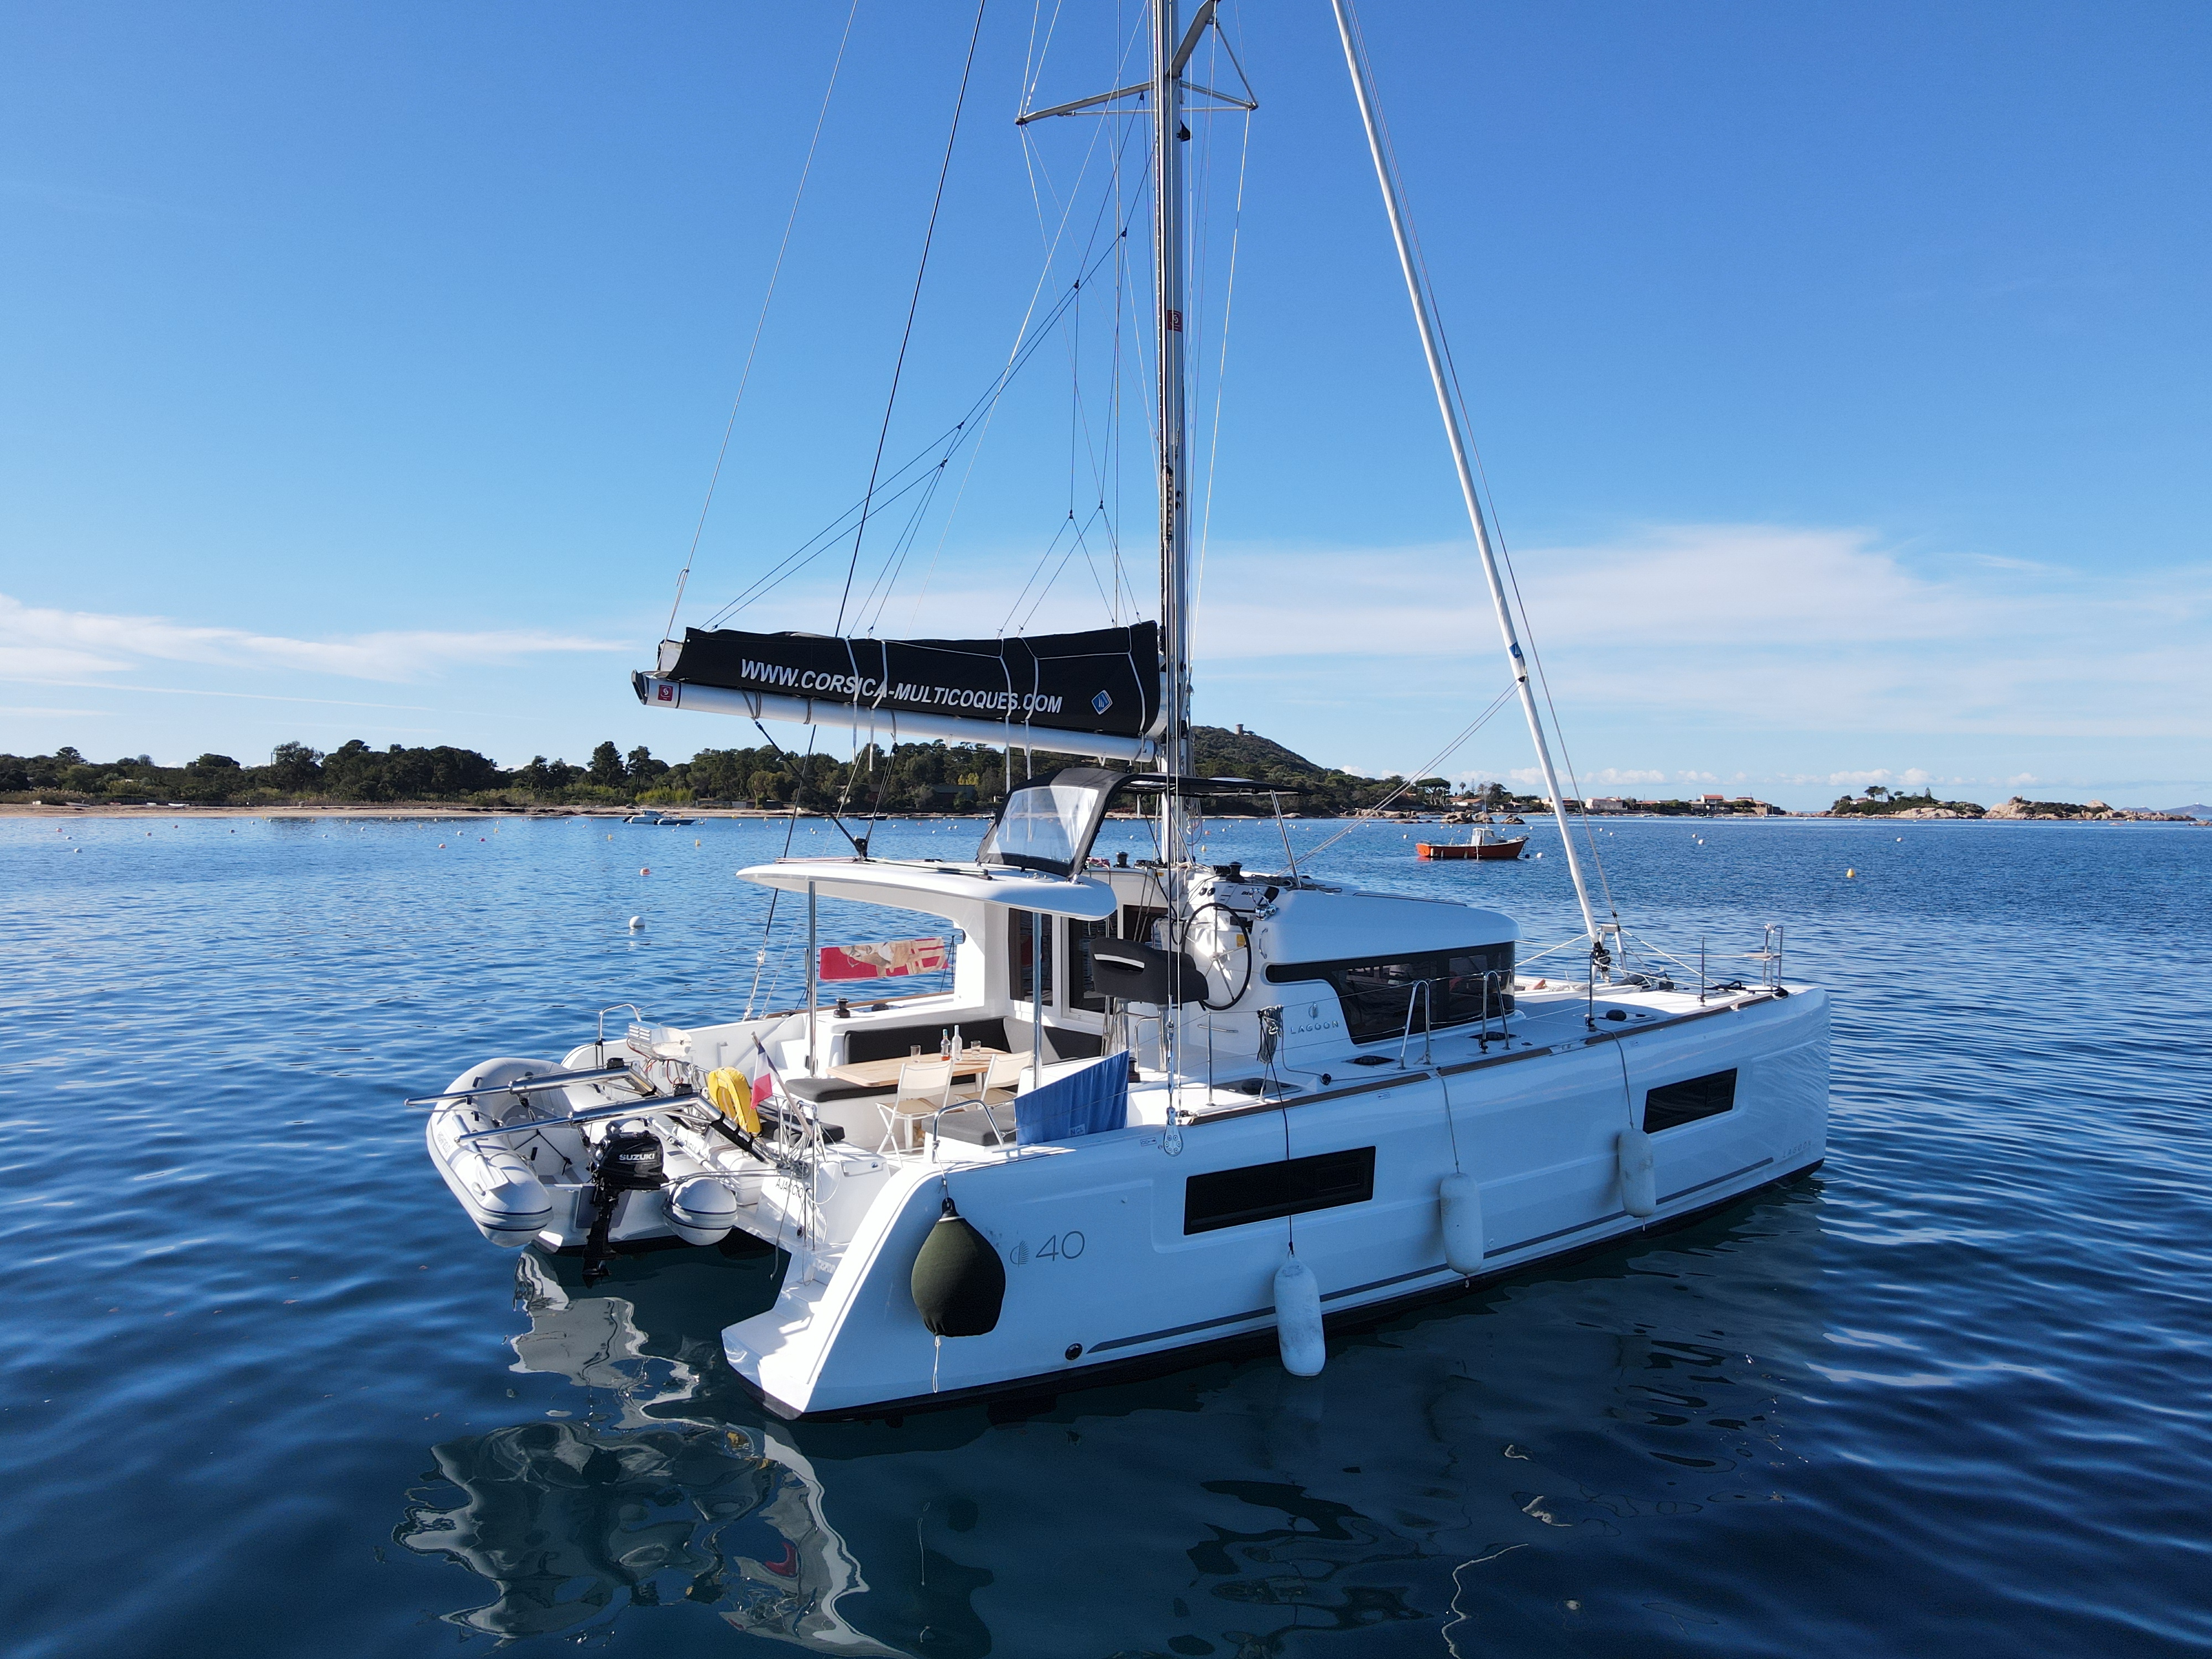 Lagoon 40 - Yacht Charter Ajaccio & Boat hire in France Corsica South Corsica Ajaccio Port Tino Rossi 1